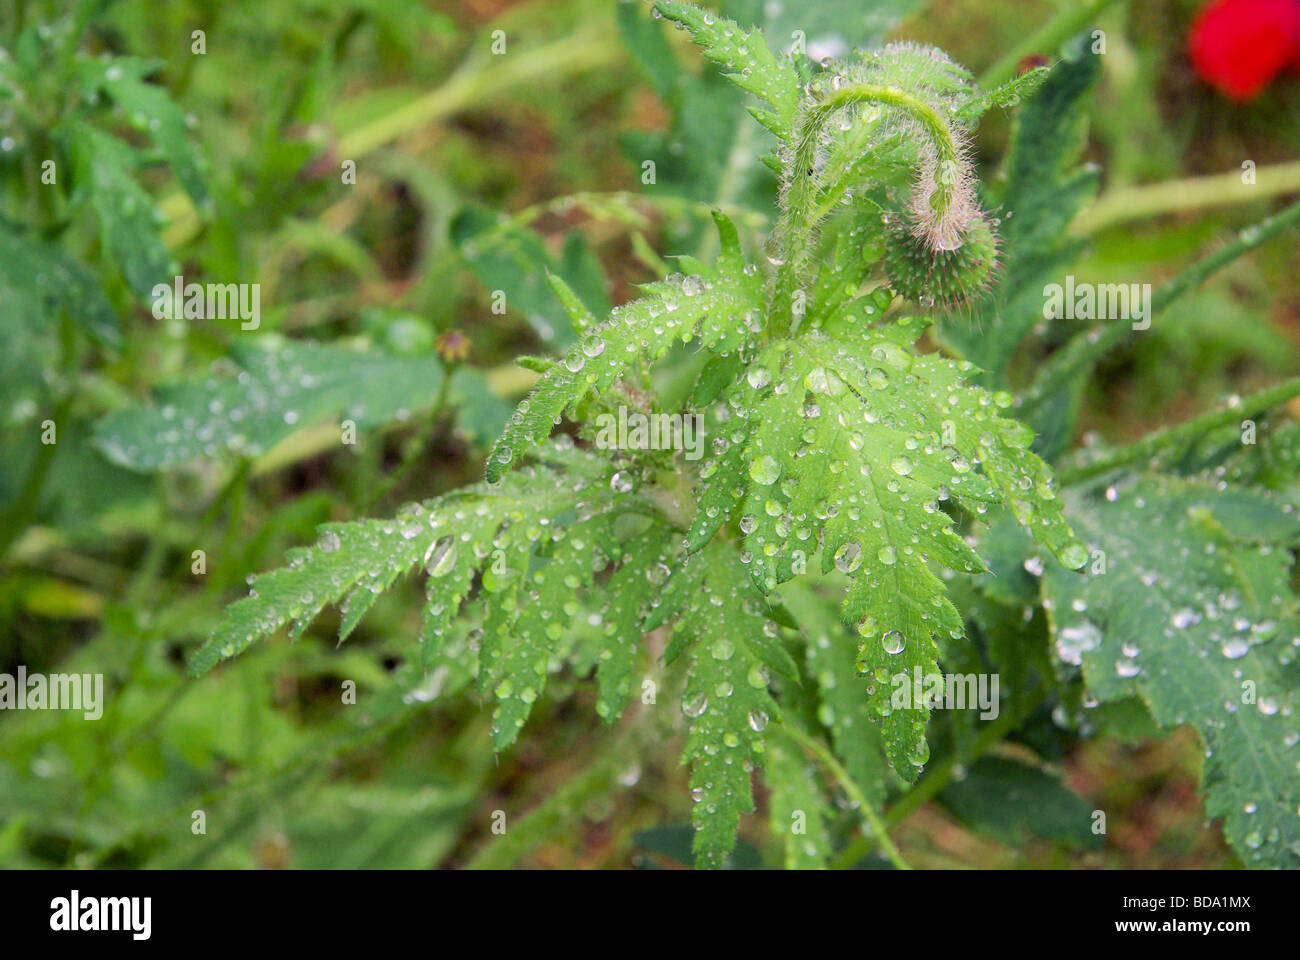 Mohnblätter nass wet leaves from poppy 06 Stock Photo